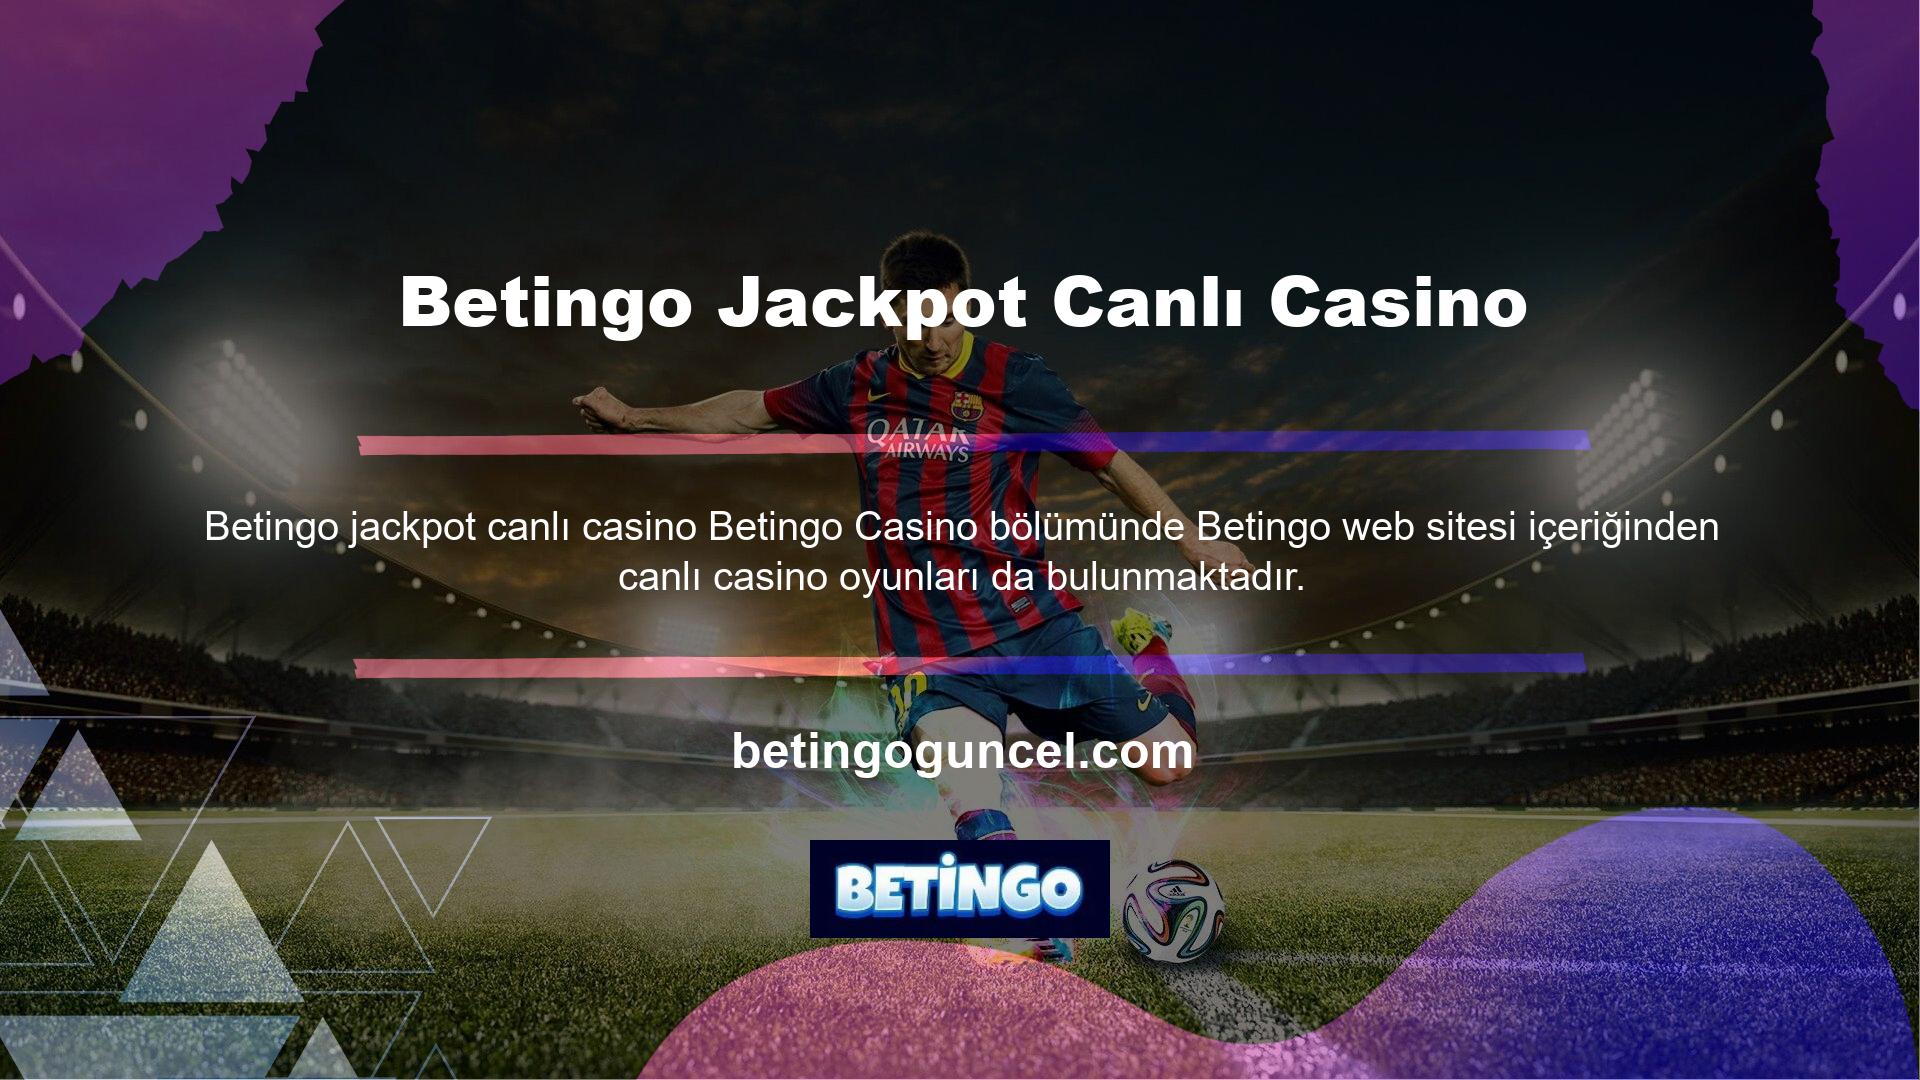 Üst menüde yer alan “Canlı Casino” seçeneğine tıklayarak canlı casino oyunlarına ulaşabilirsiniz